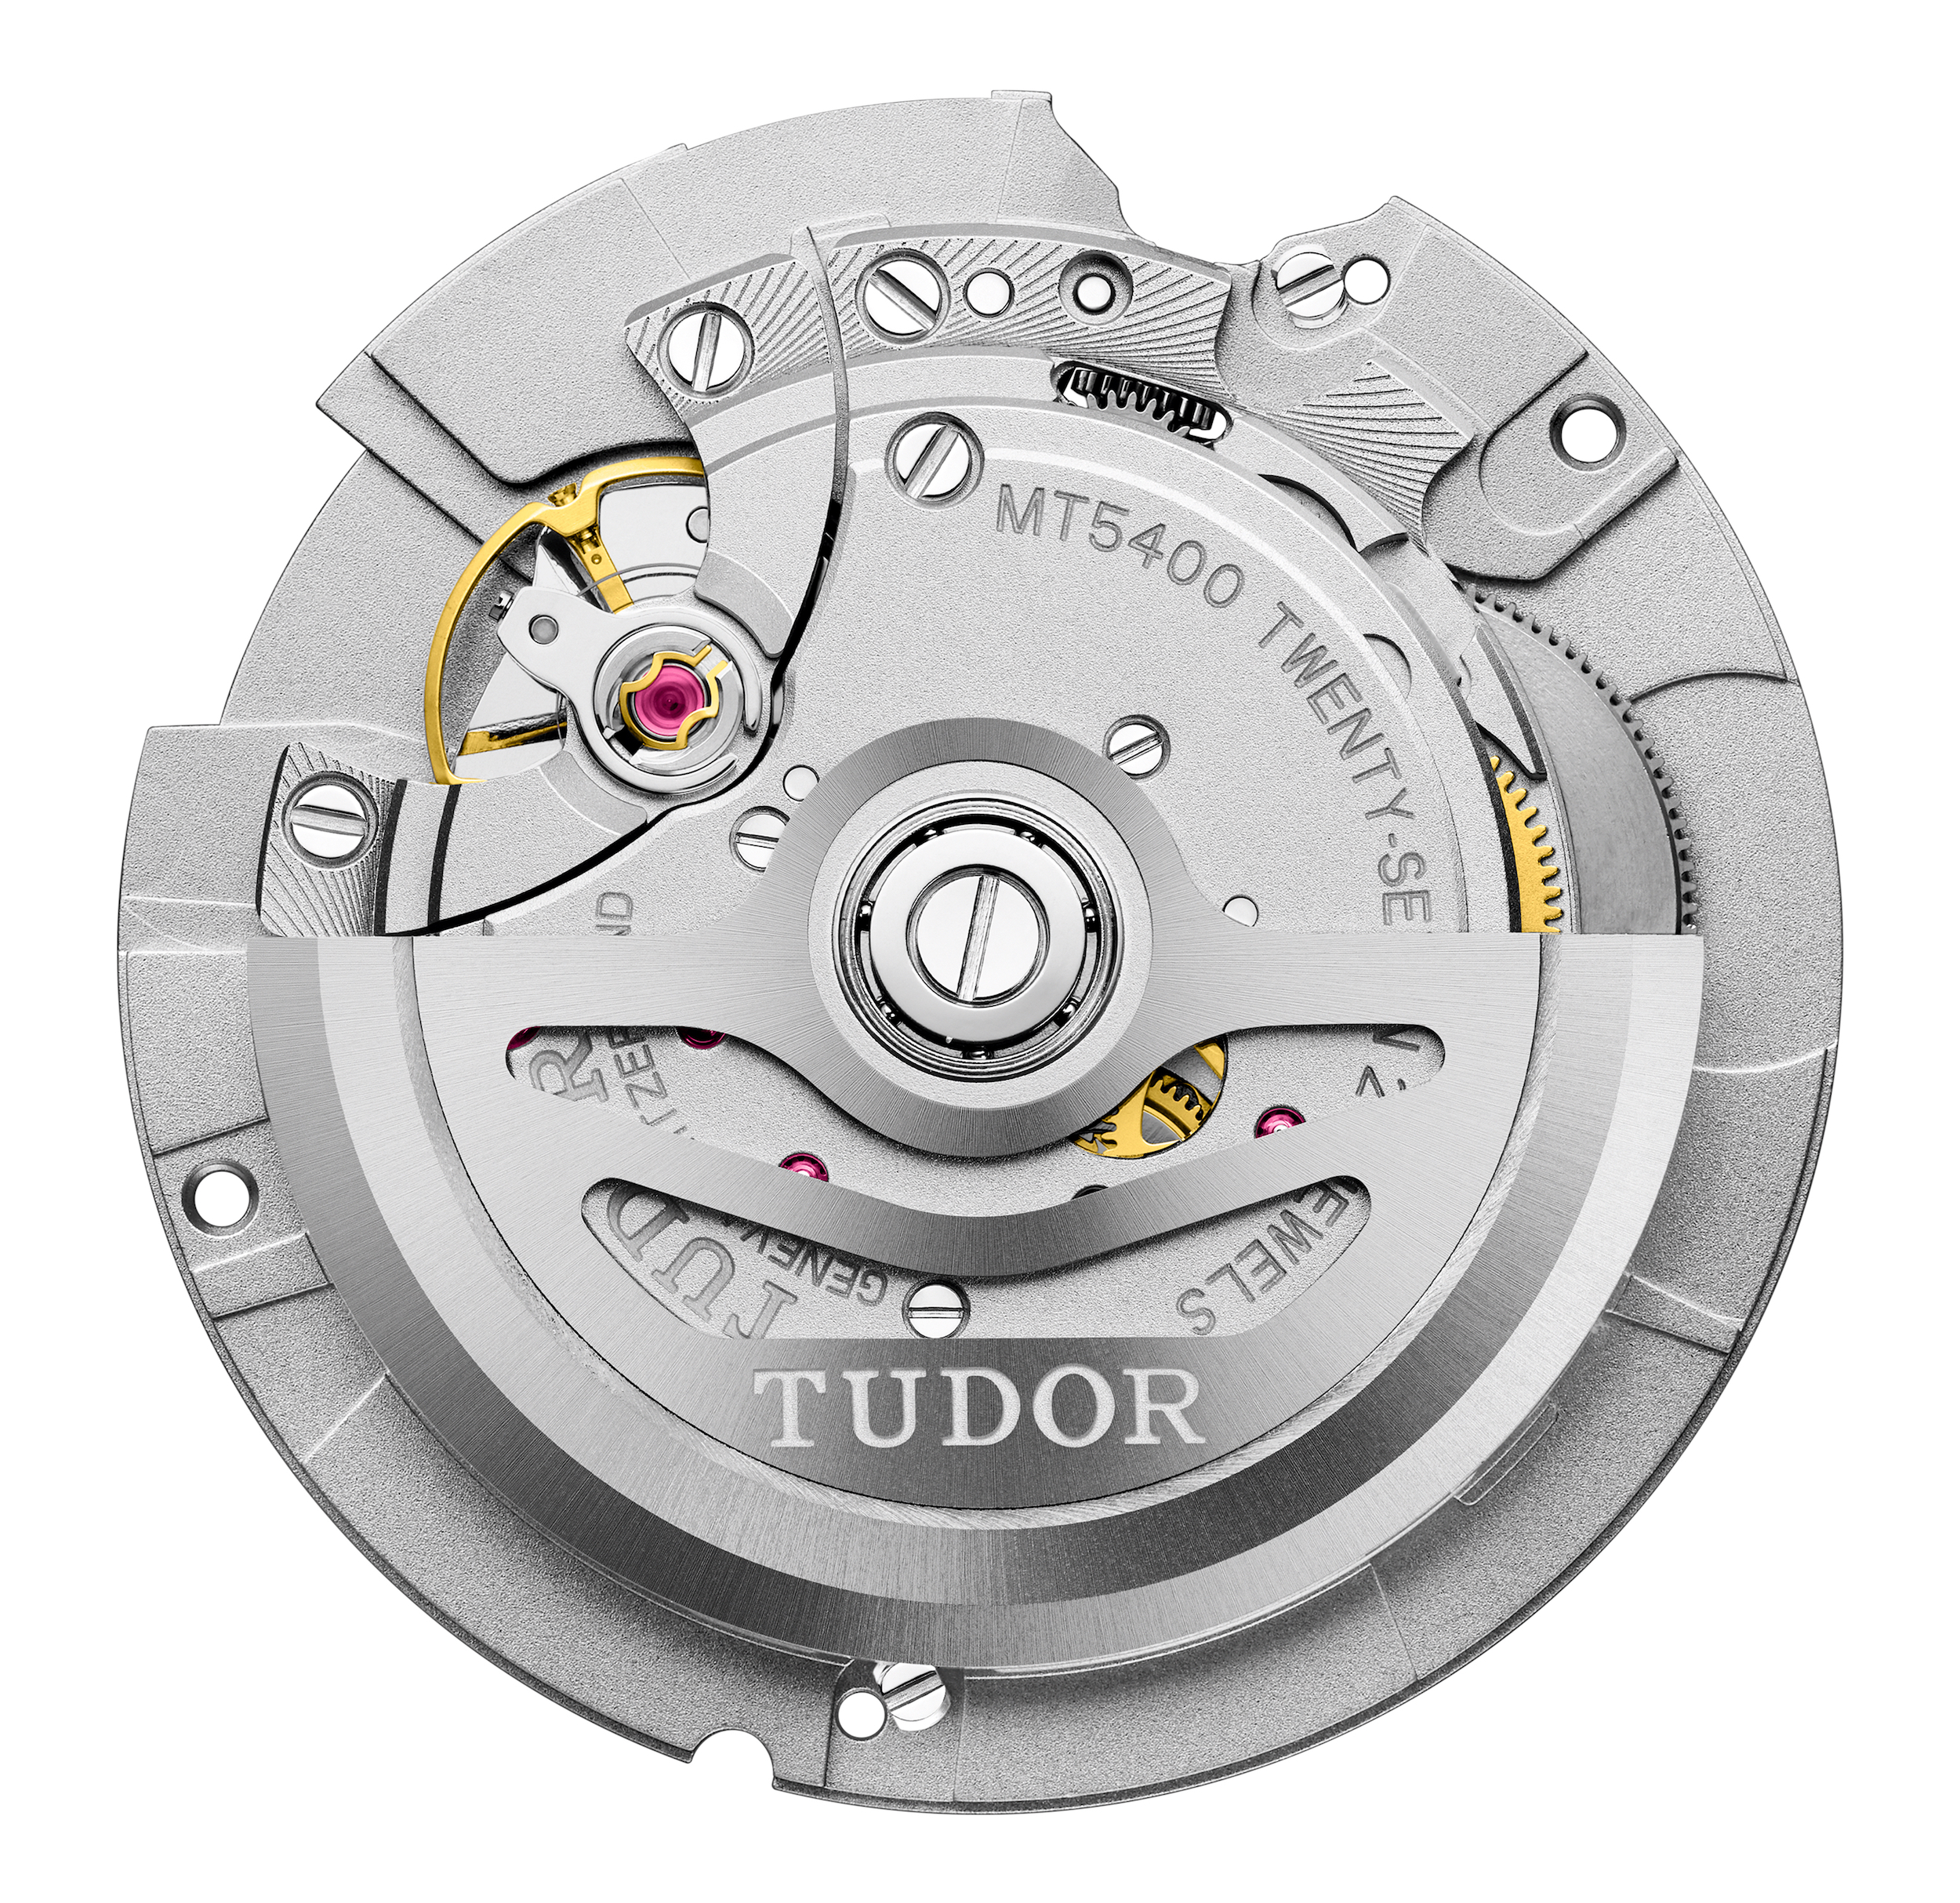 Tudor caliber MT5400